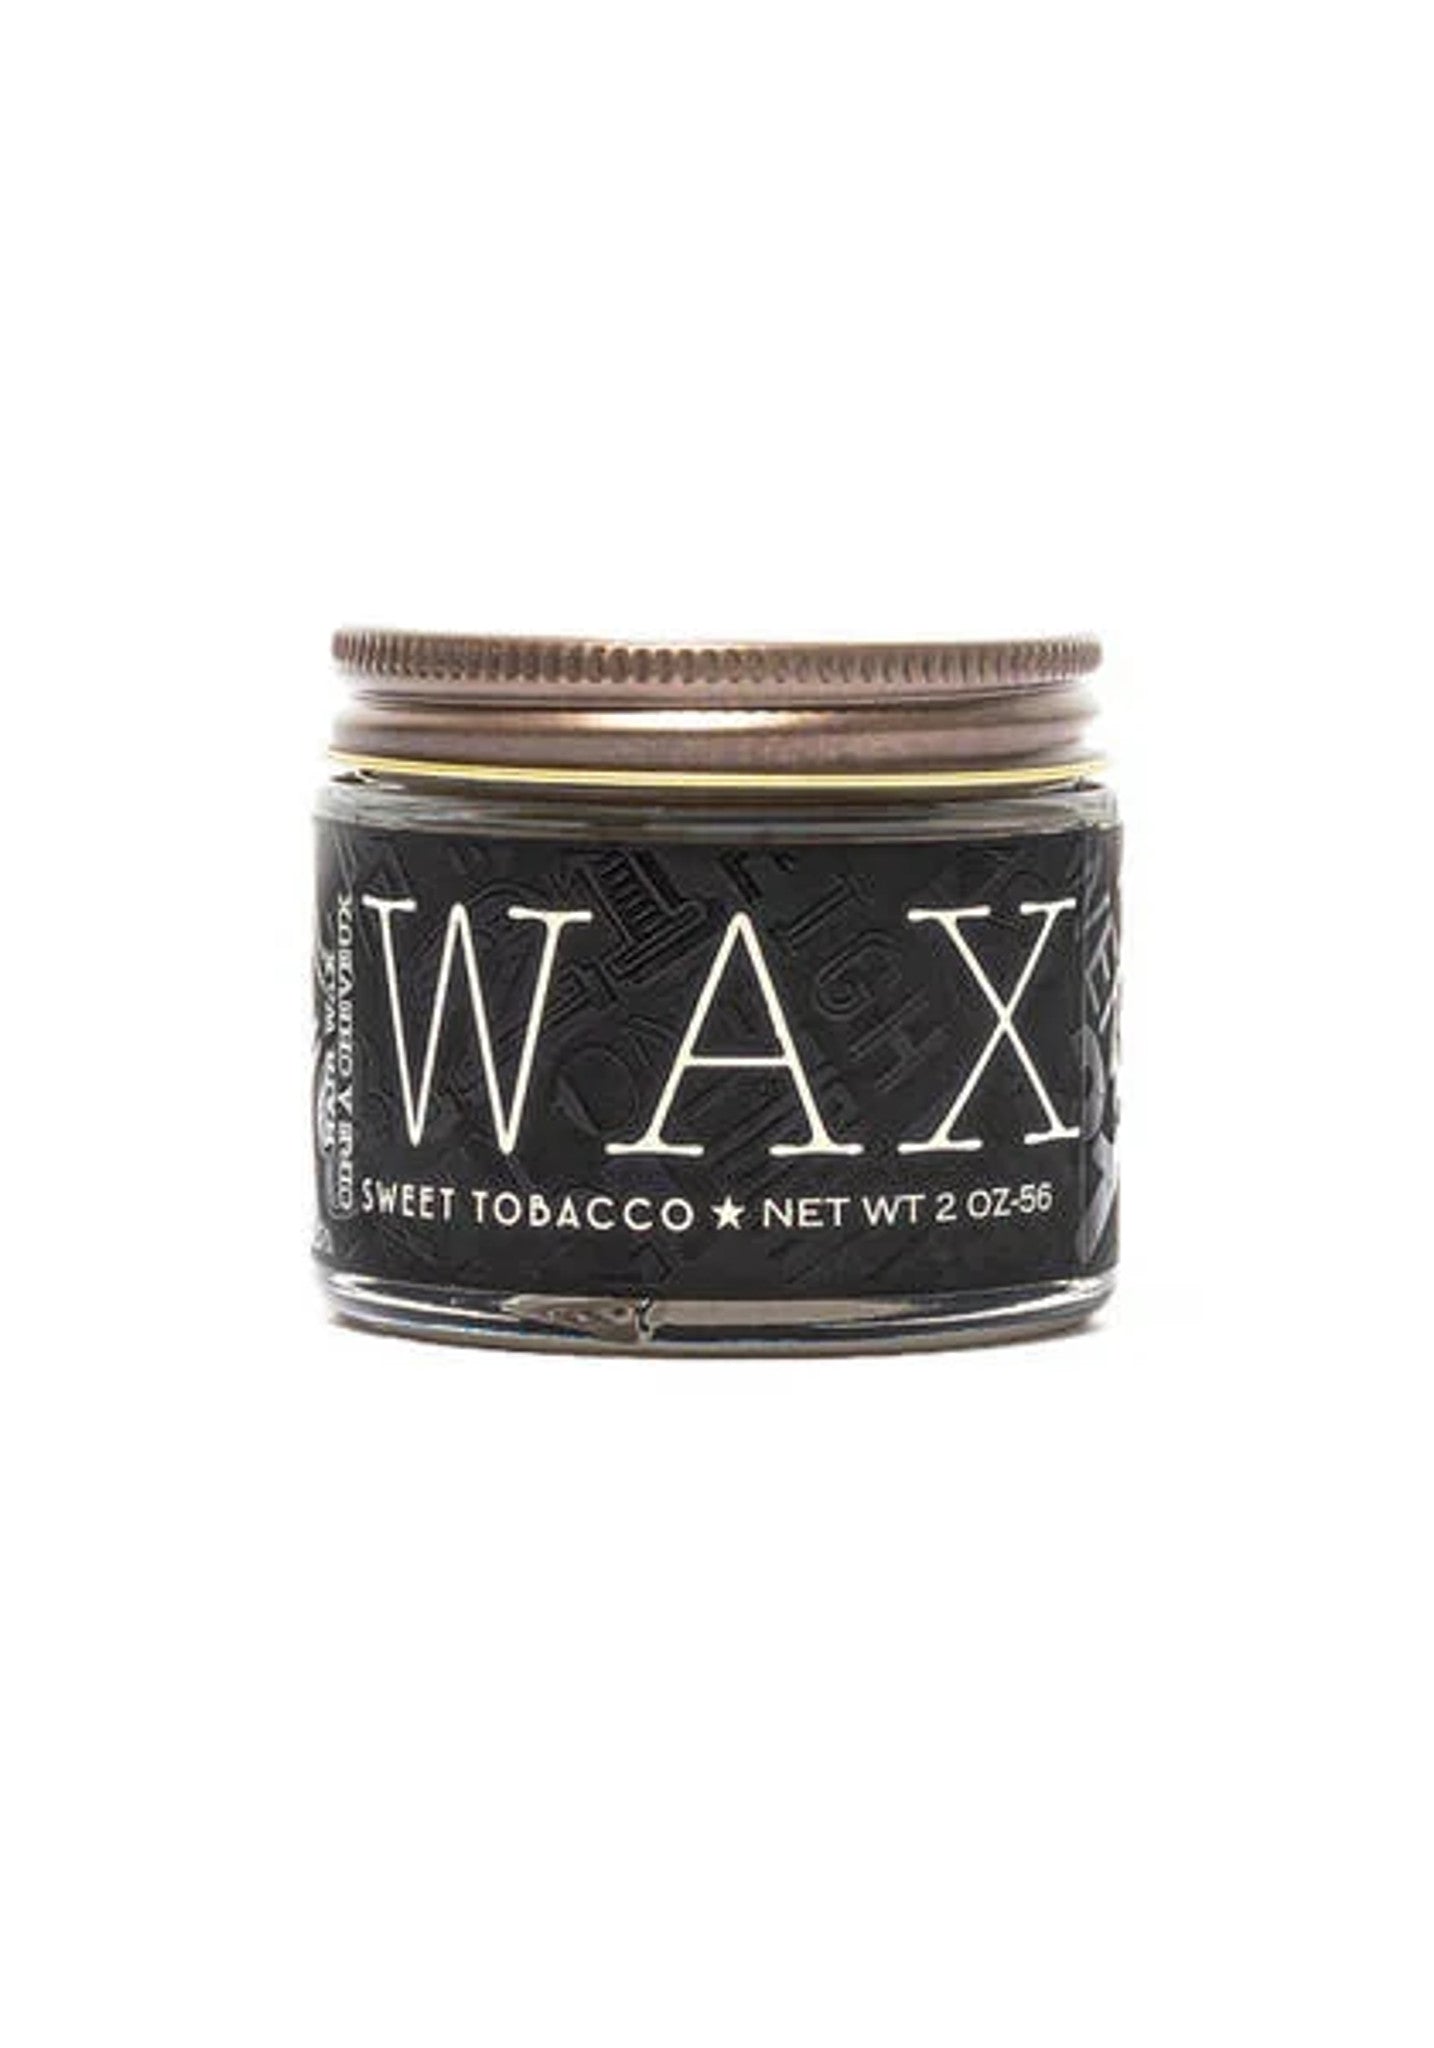 18.21 Man Made Hair Wax - Sweet Tobacco - 2oz